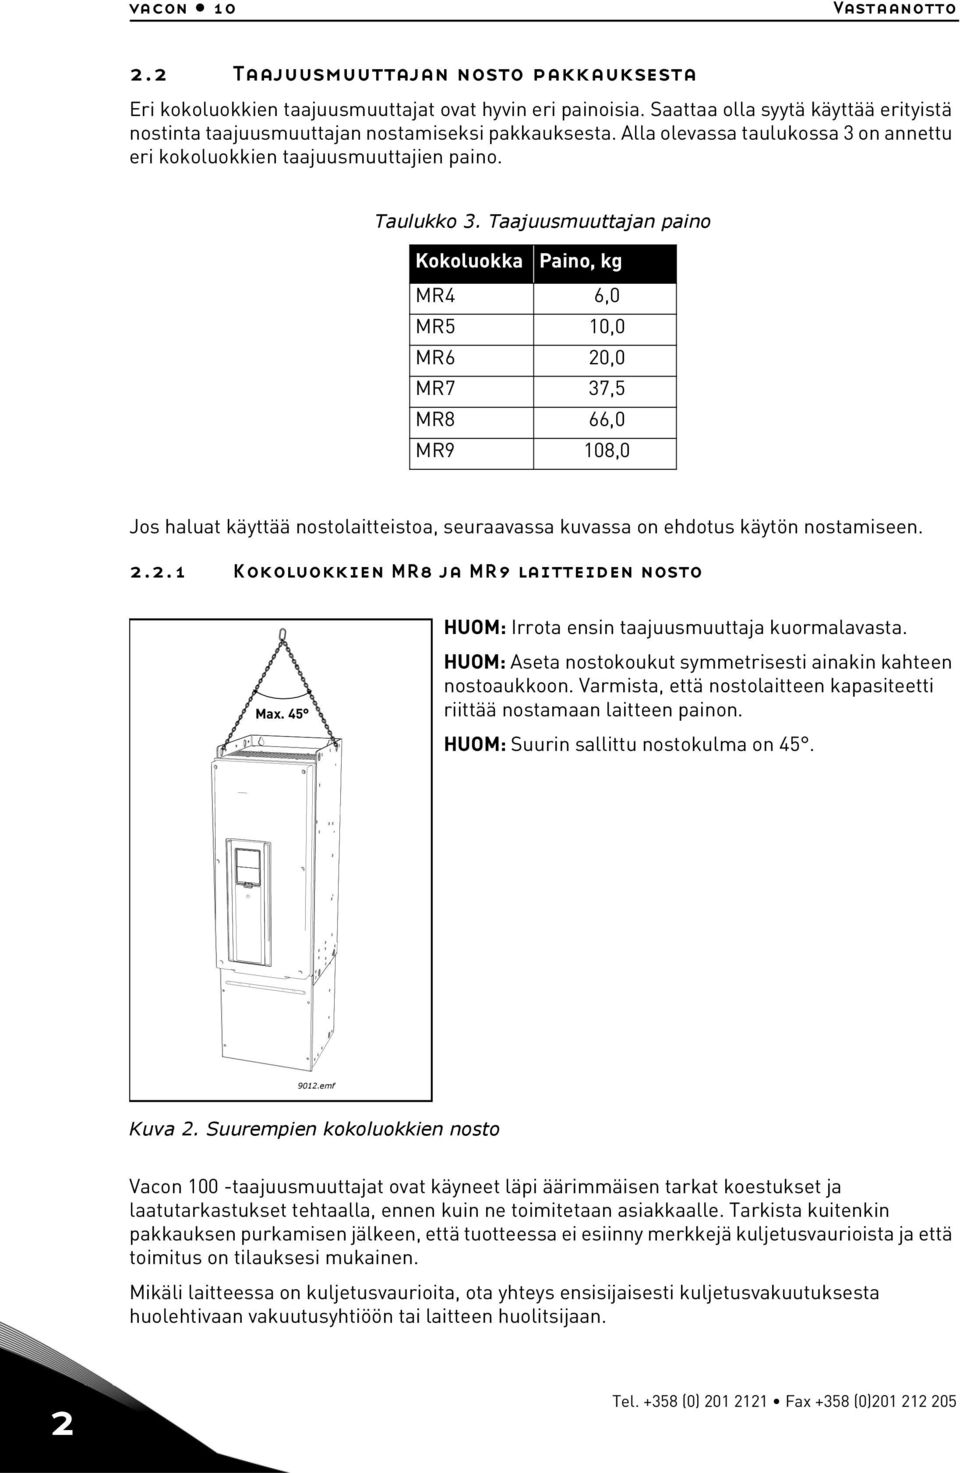 Taajuusmuuttajan paino Kokoluokka Paino, kg MR4 6,0 MR5 10,0 MR6 20,0 MR7 37,5 MR8 66,0 MR9 108,0 Jos haluat käyttää nostolaitteistoa, seuraavassa kuvassa on ehdotus käytön nostamiseen. 2.2.1 Kokoluokkien MR8 ja MR9 laitteiden nosto Max.